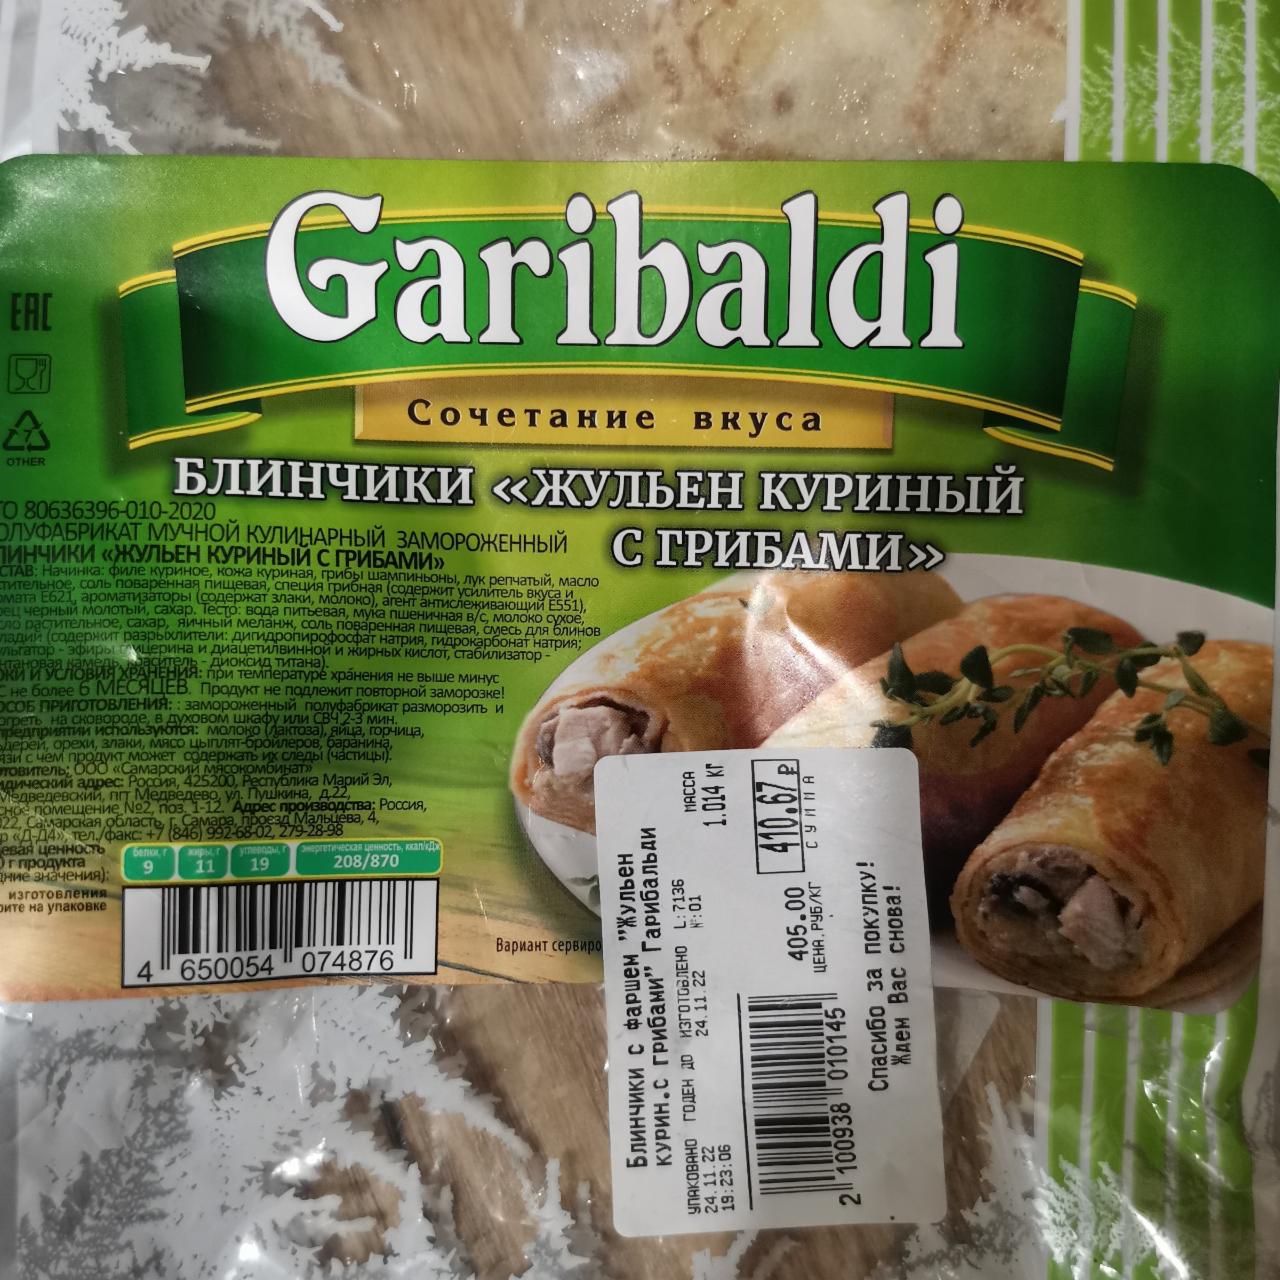 Фото - Блины Жульен куриный с грибами Garibaldi